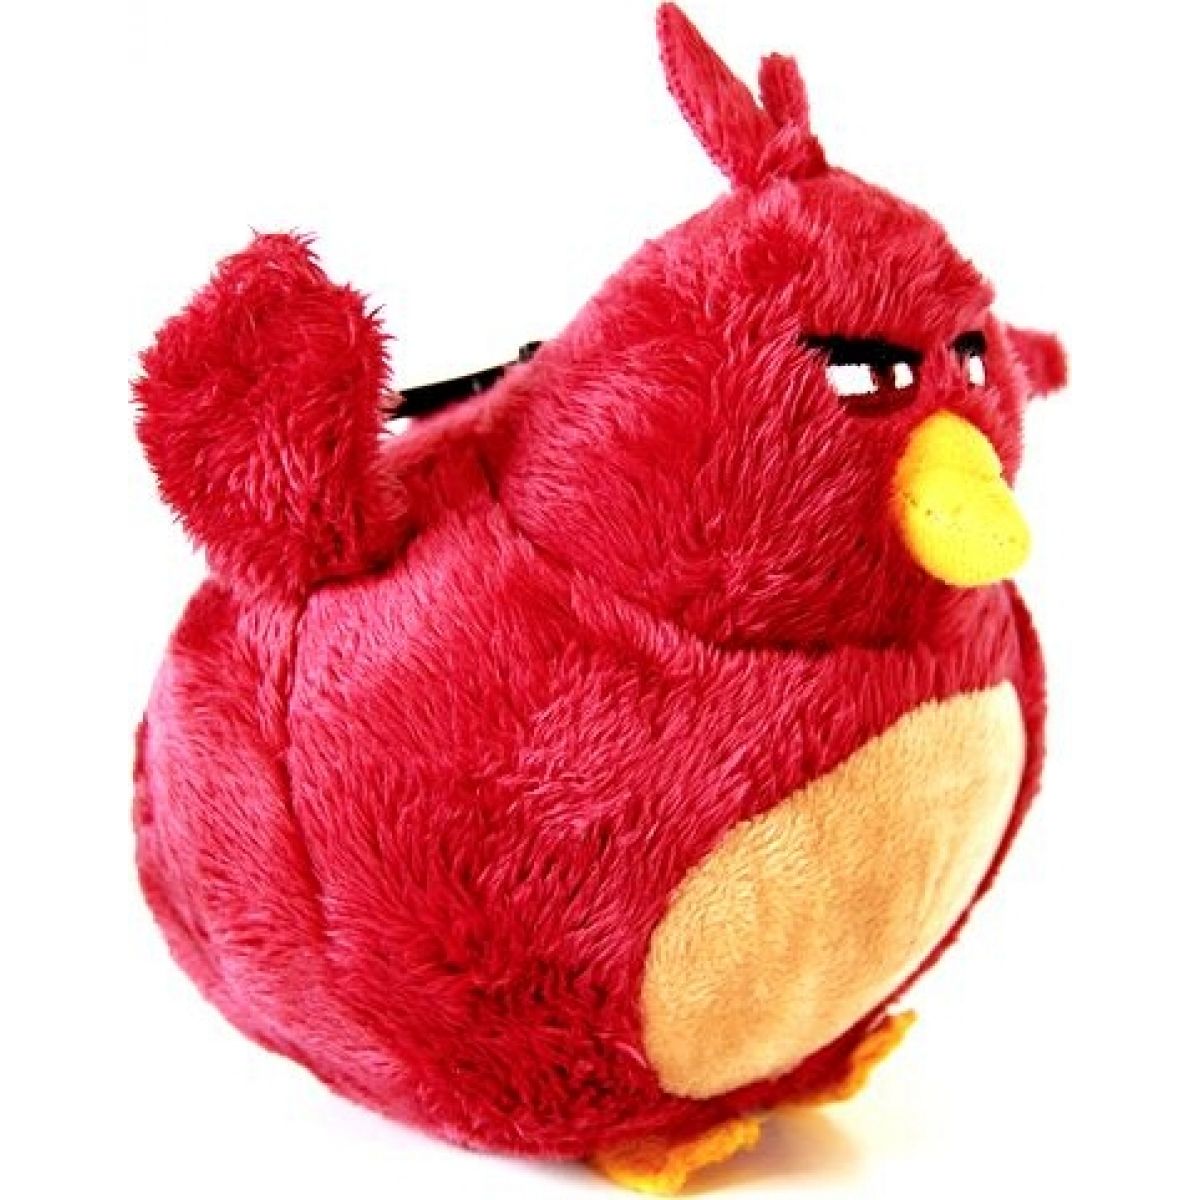 ADC Blackfire Angry Birds Plyšák s přívěskem - Terence